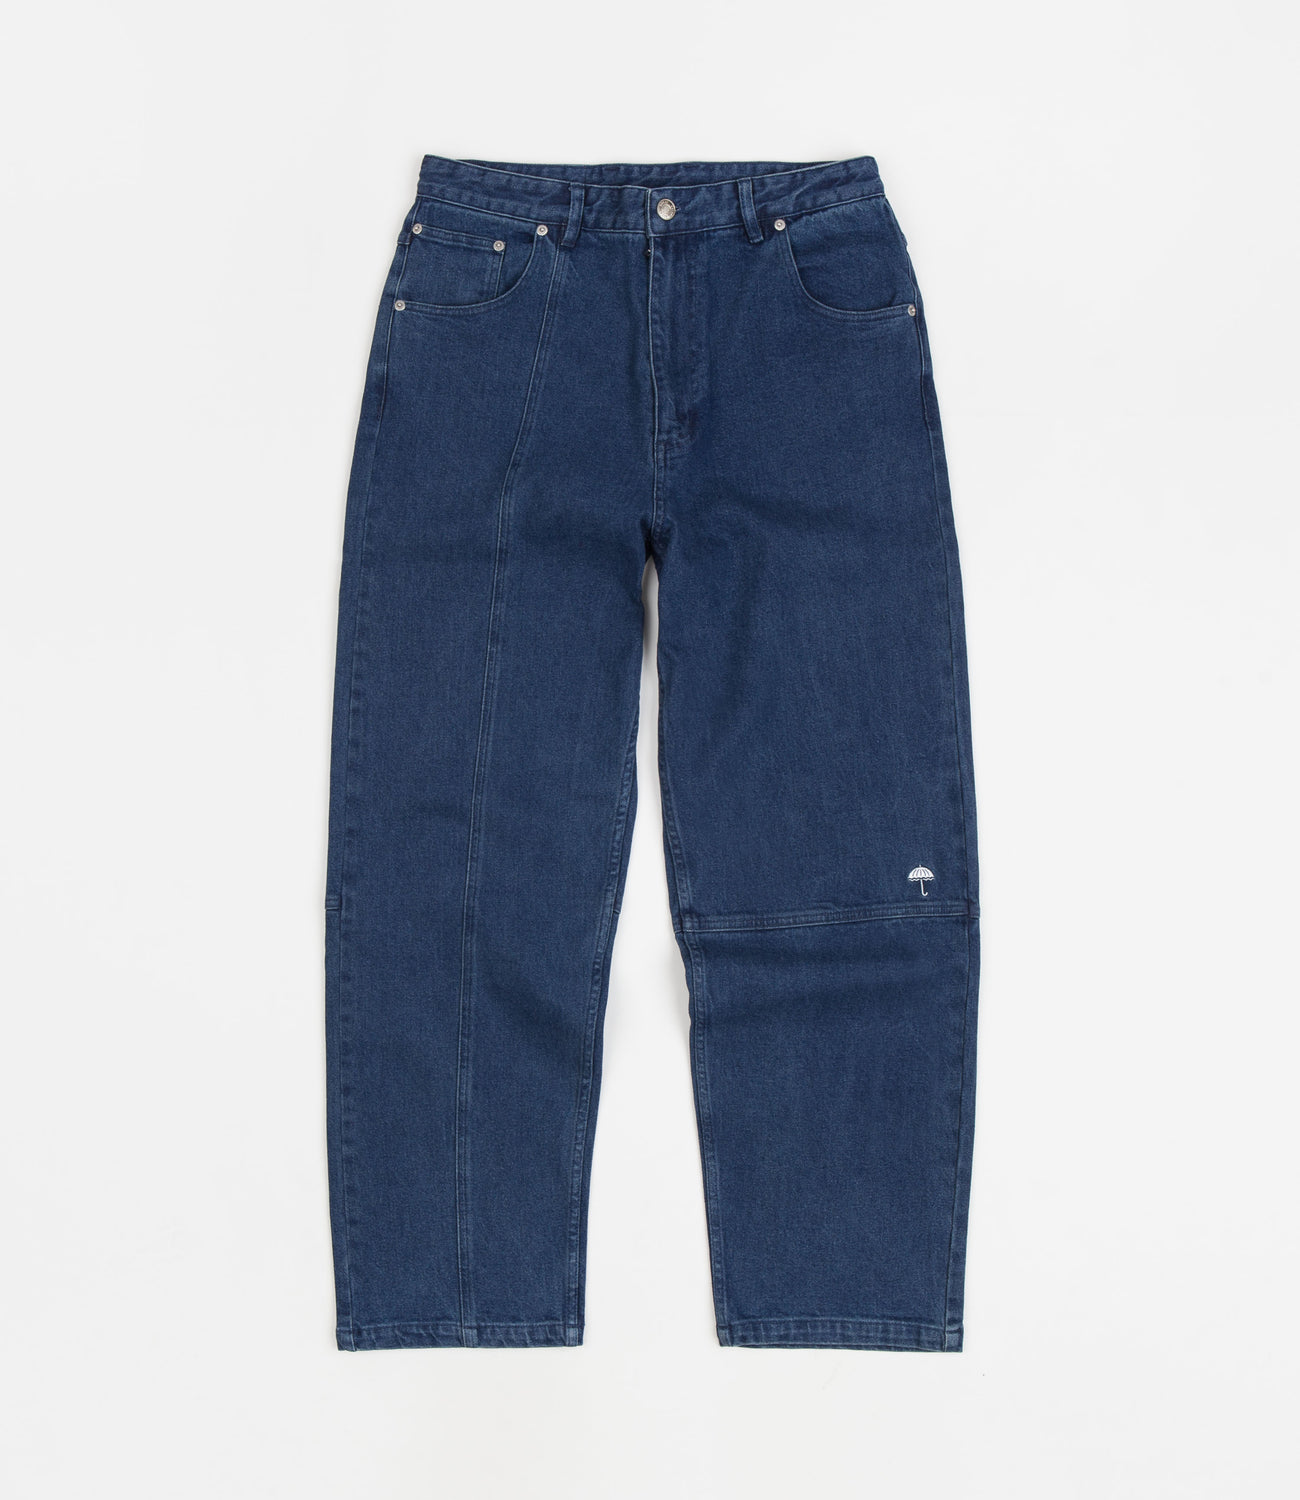 Lap Jeans - Flatspot